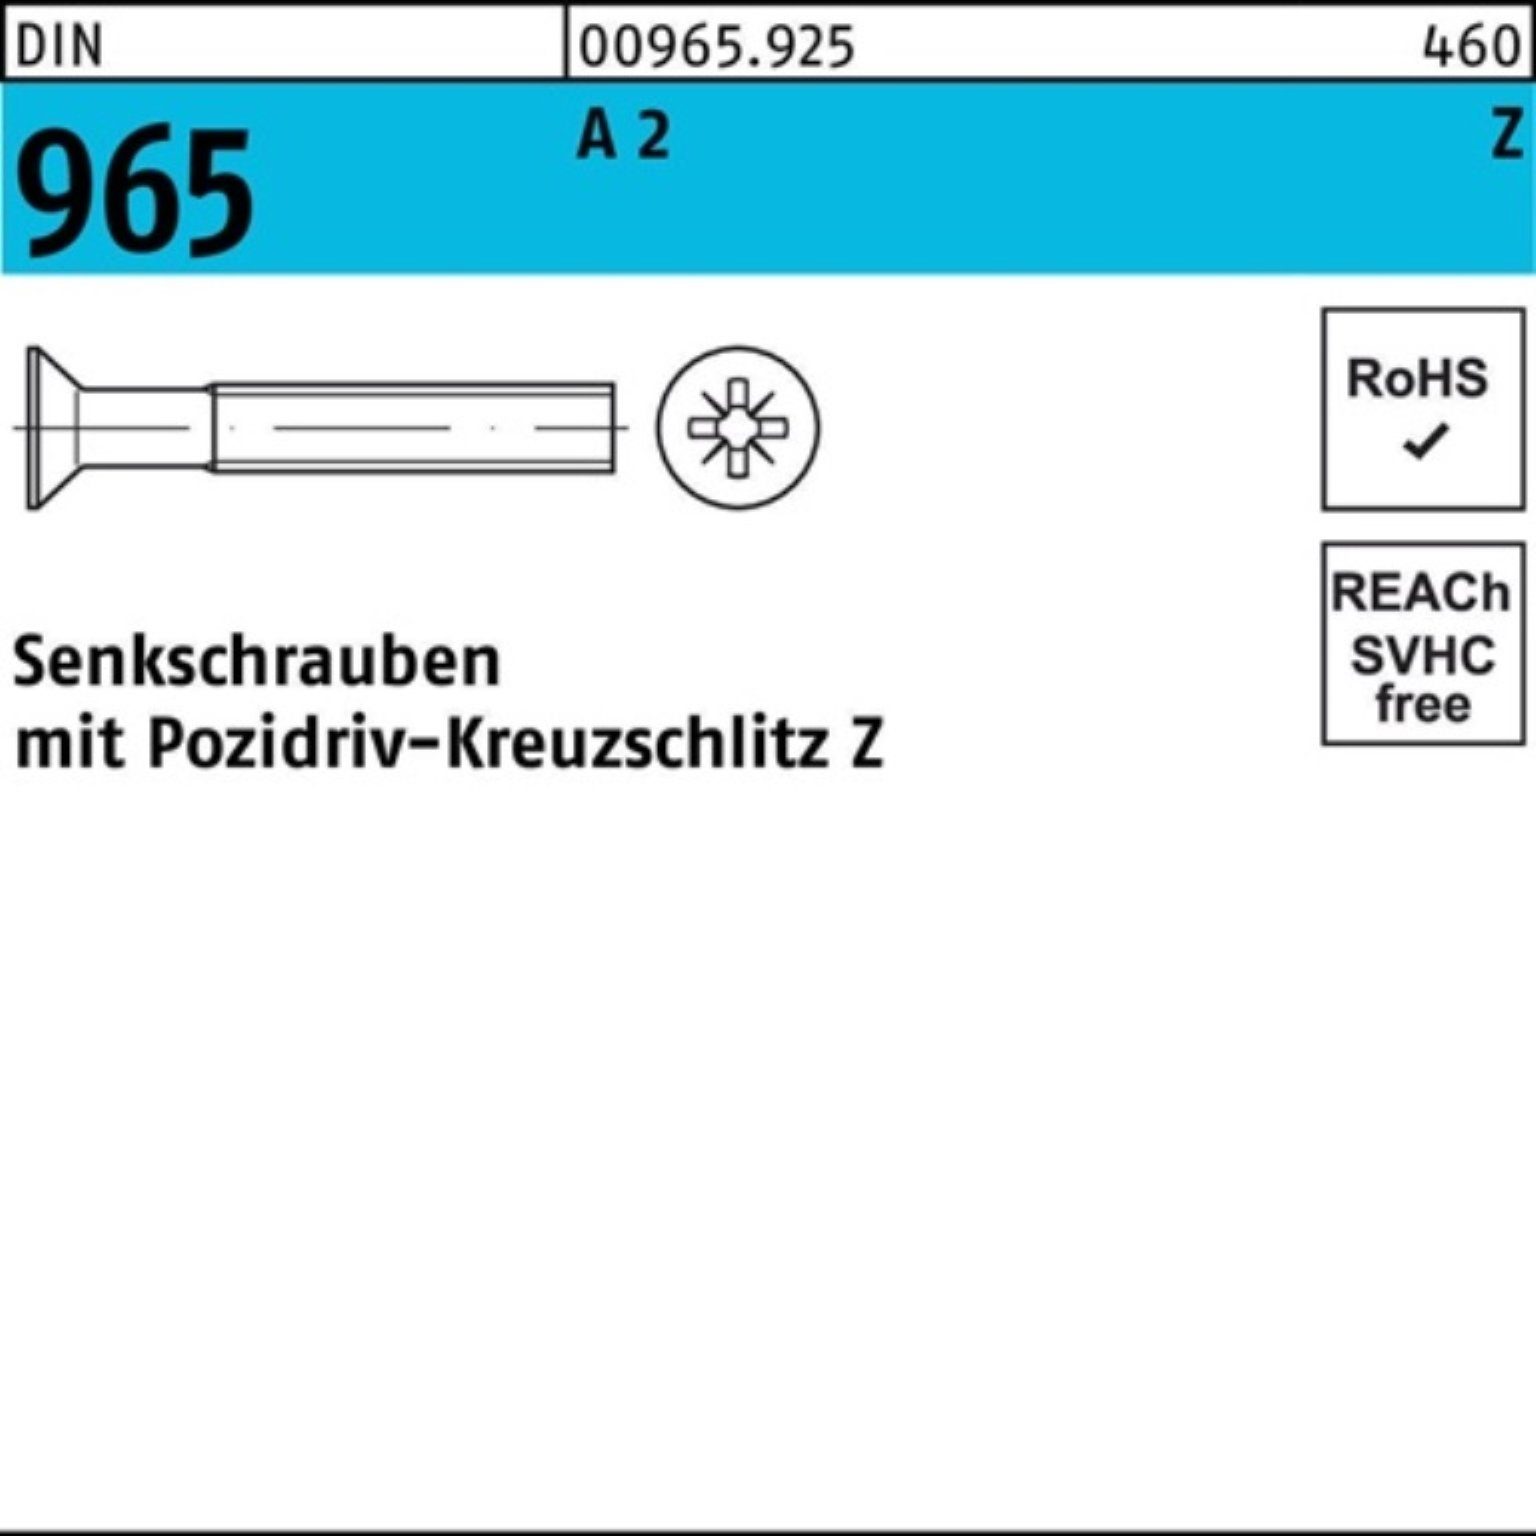 Stück Senkschraube M3x PZ 965 965 Senkschraube 1000er DIN Pack DIN A A 2 Reyher 30-Z 1000